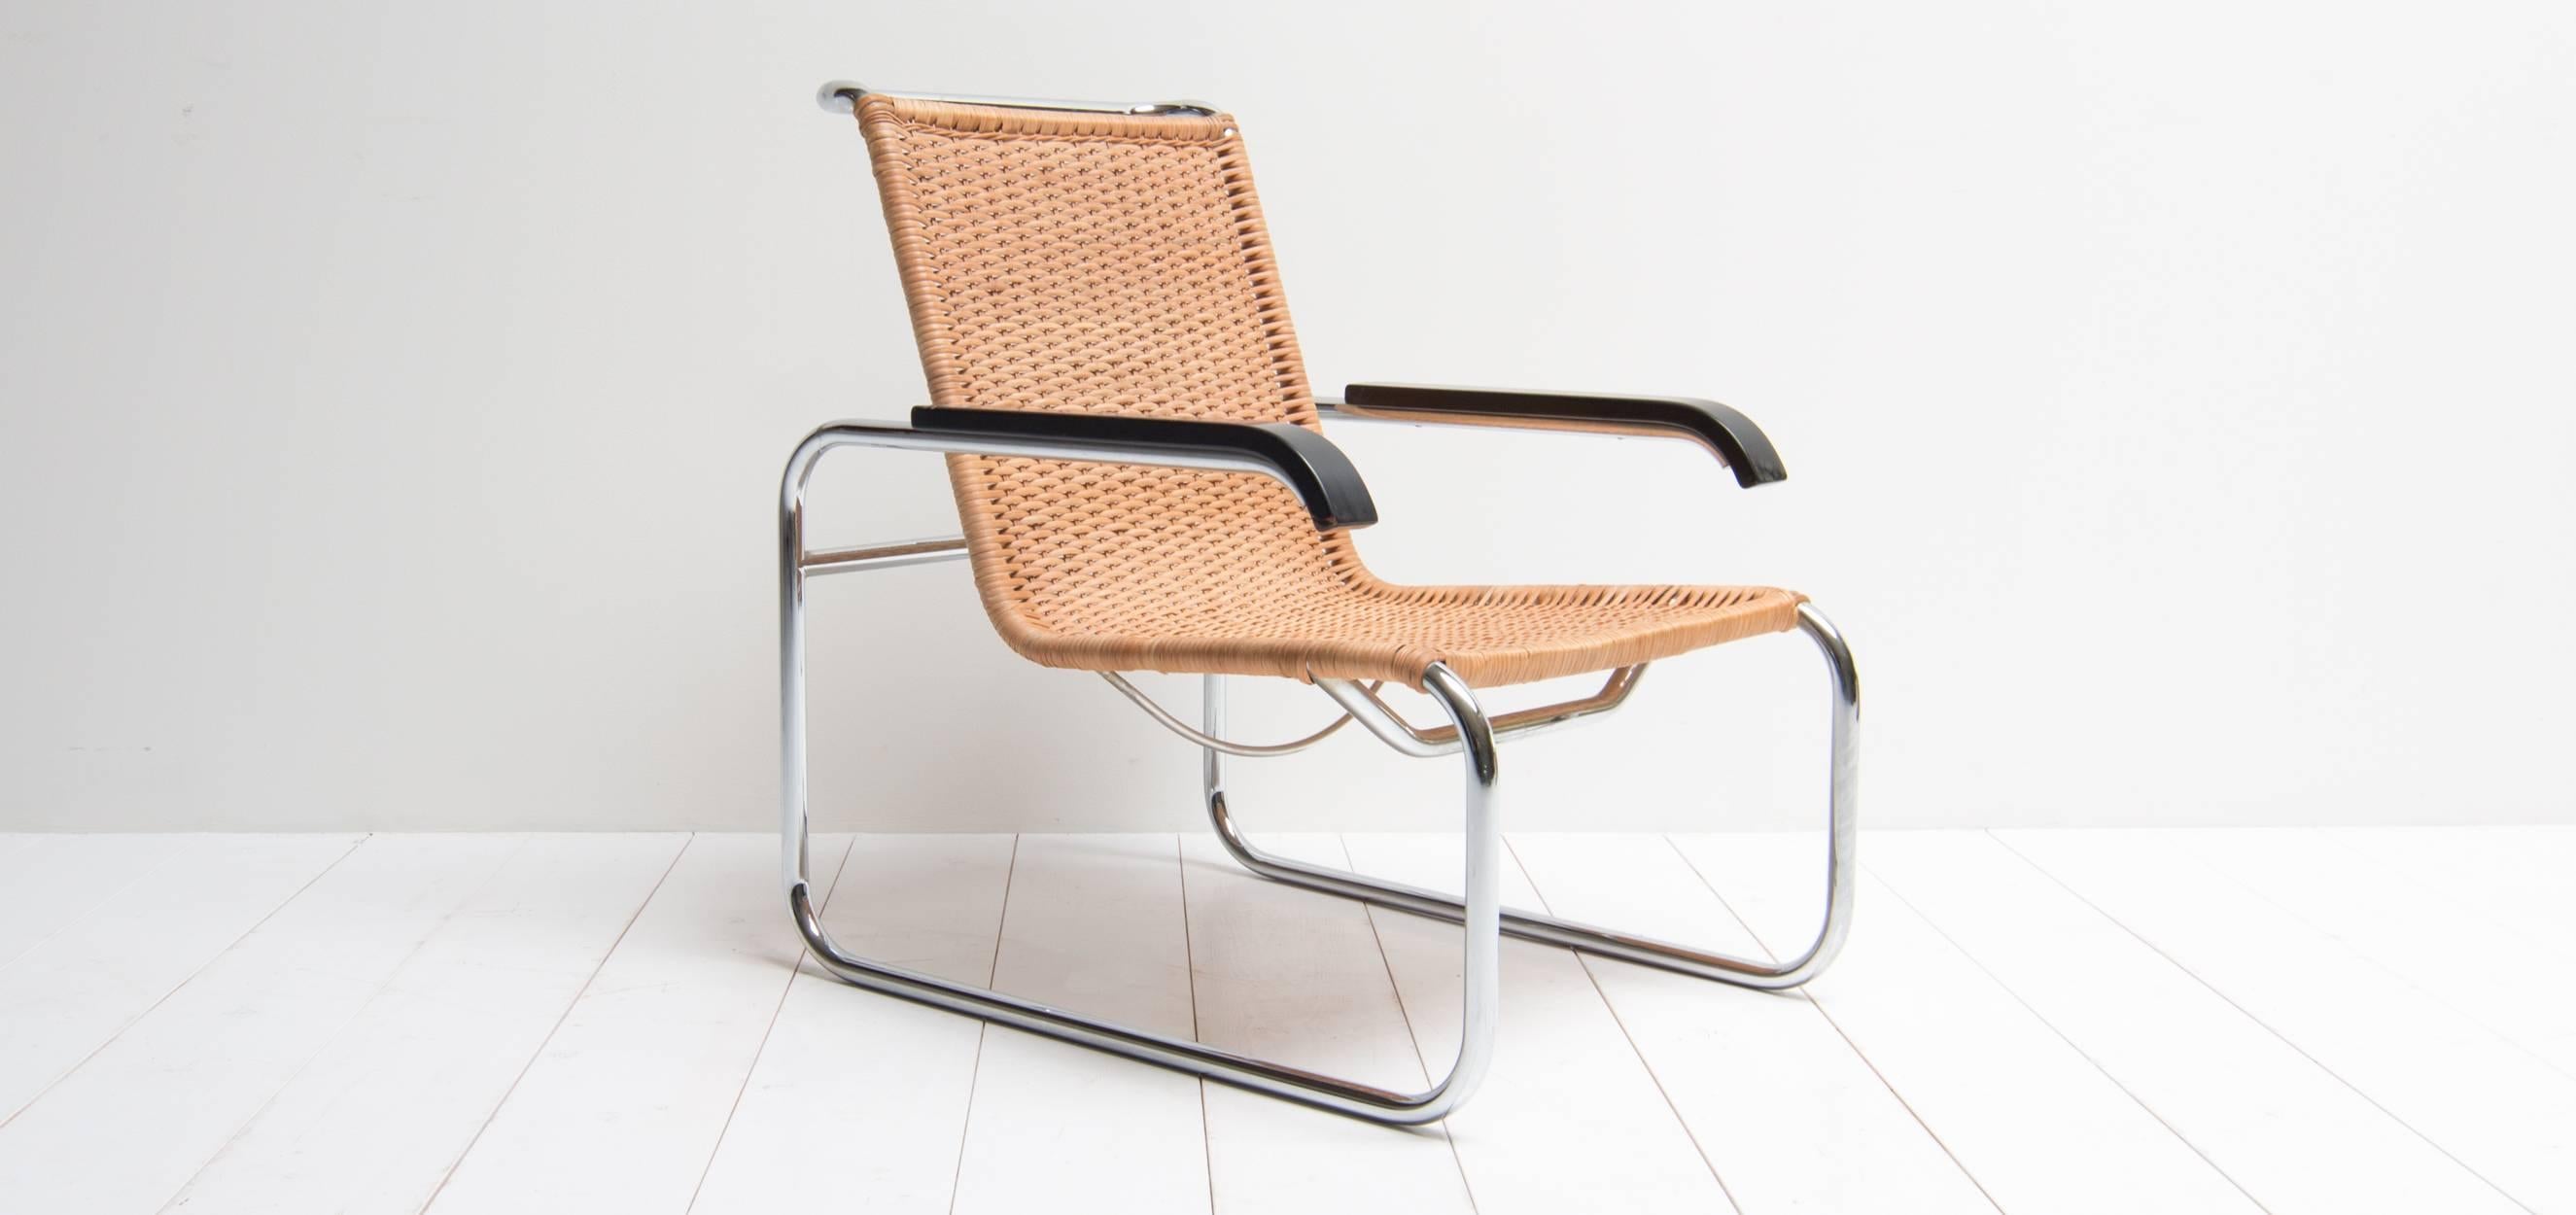 Vintage Design Cantilever Chair Model B35, Designed by Marcel Breuer 1